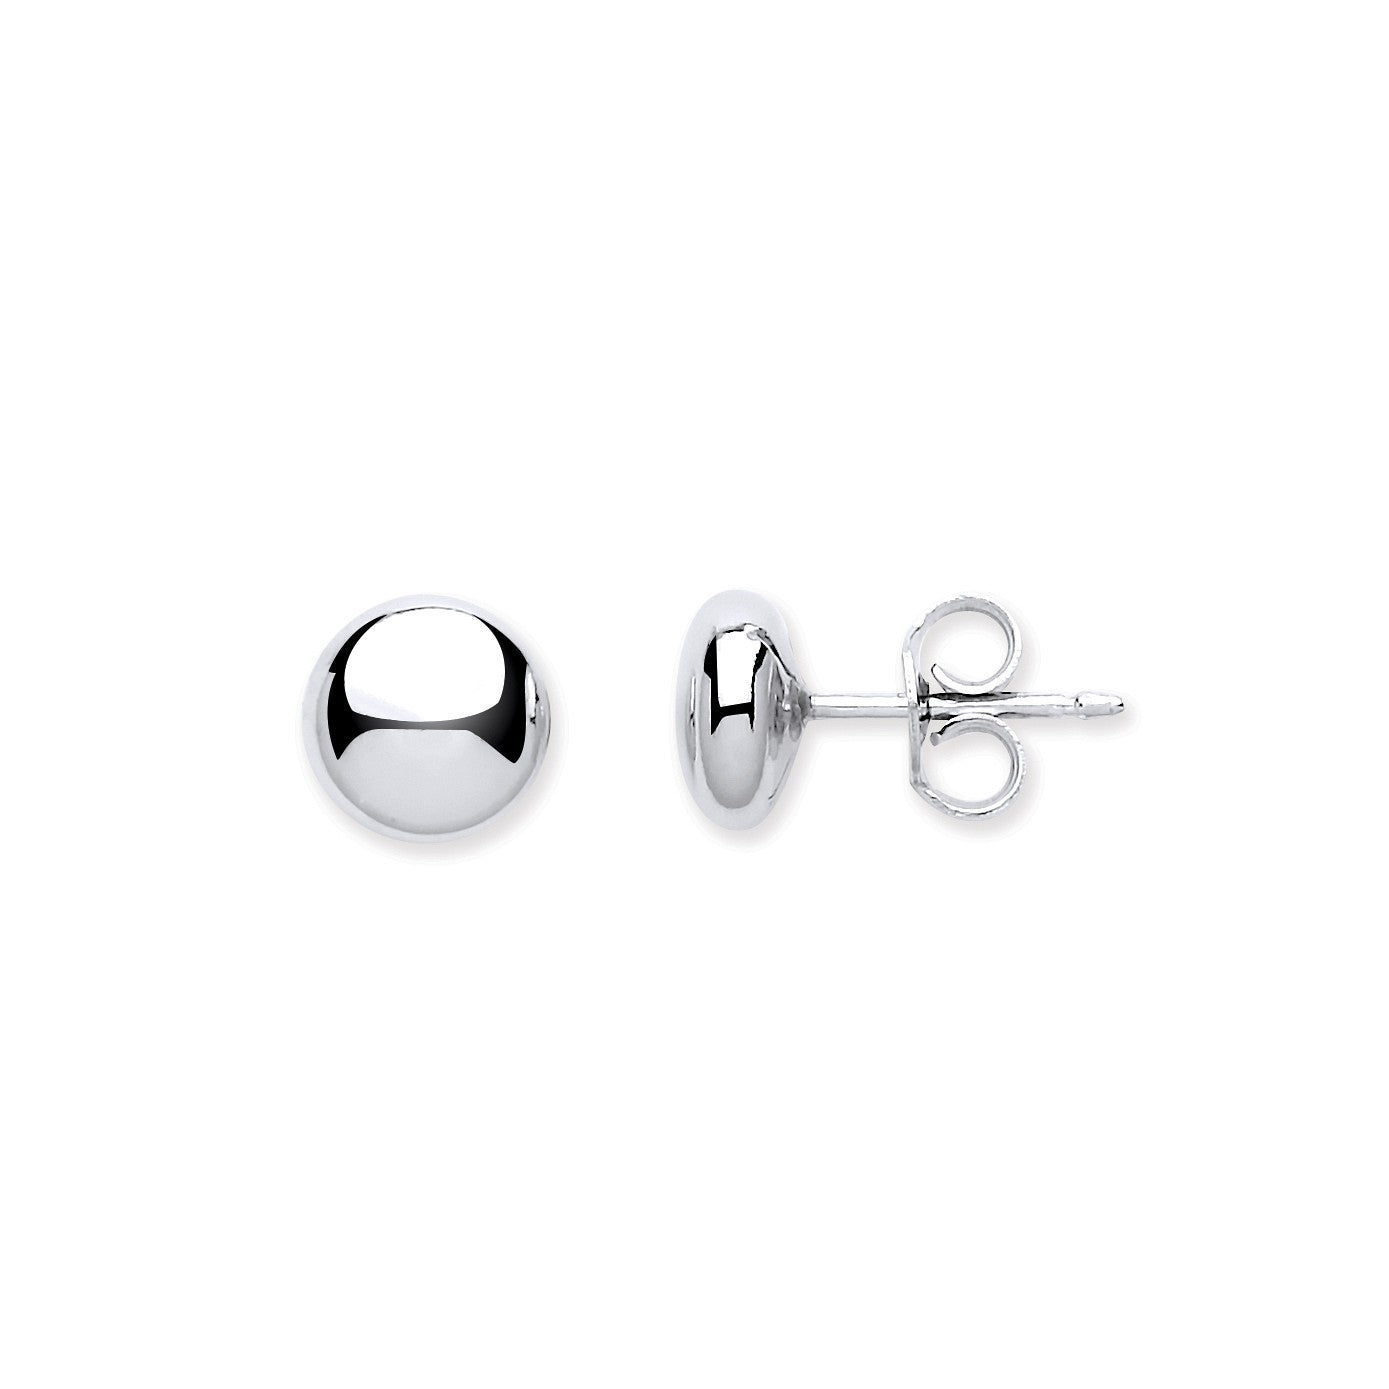 Silver 7mm Button Stud Earrings